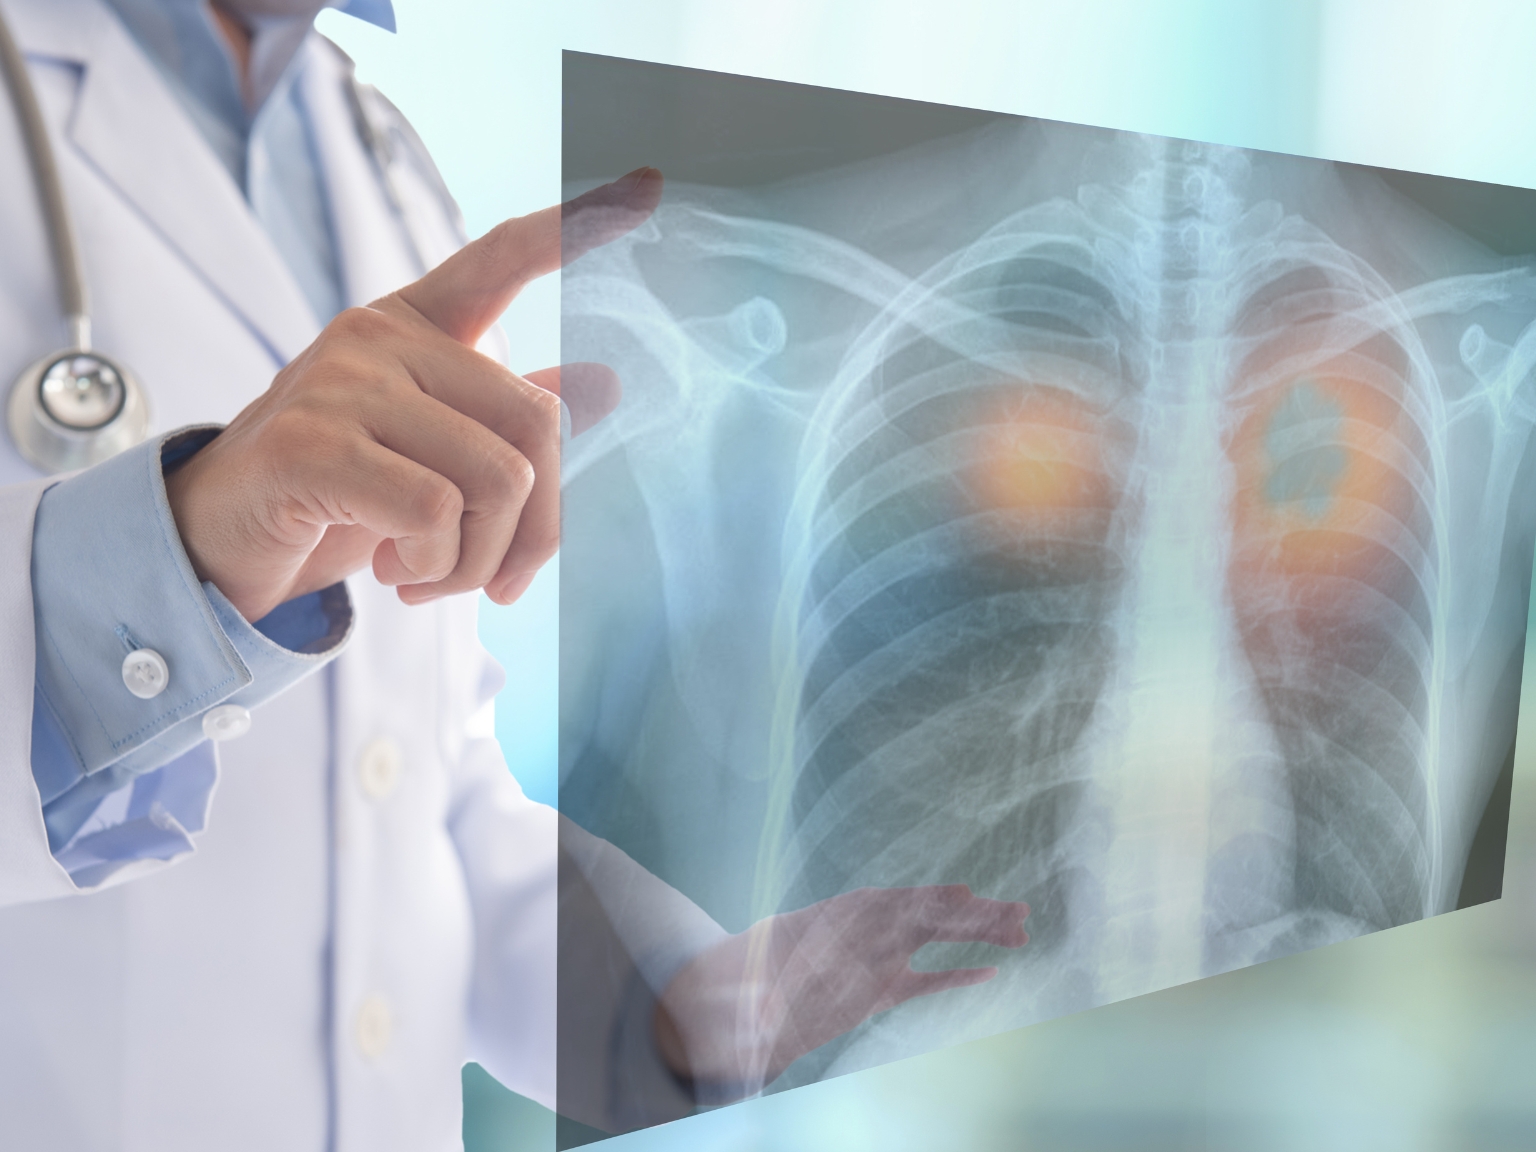 Cancerul pulmonar – Prevenirea, Detectarea Timpurie și Rolul Stilului de Viață Sănătos